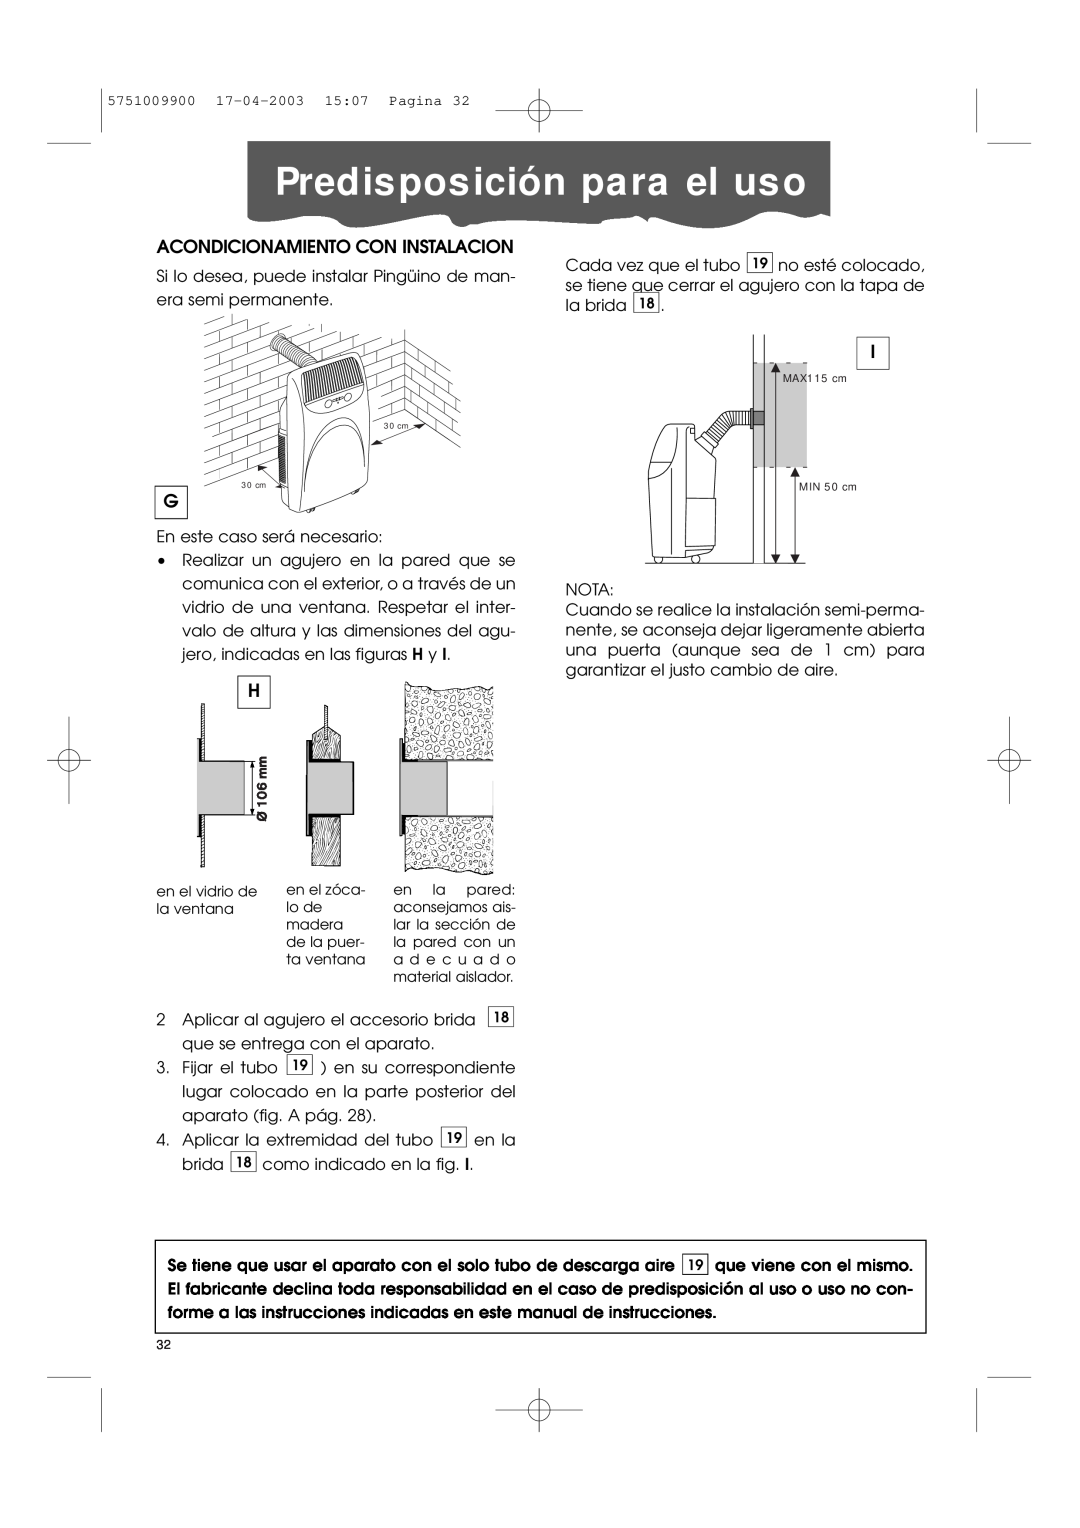 DeLonghi Pac 1000 manual Predisposición para el uso, Acondicionamiento Con Instalacion 